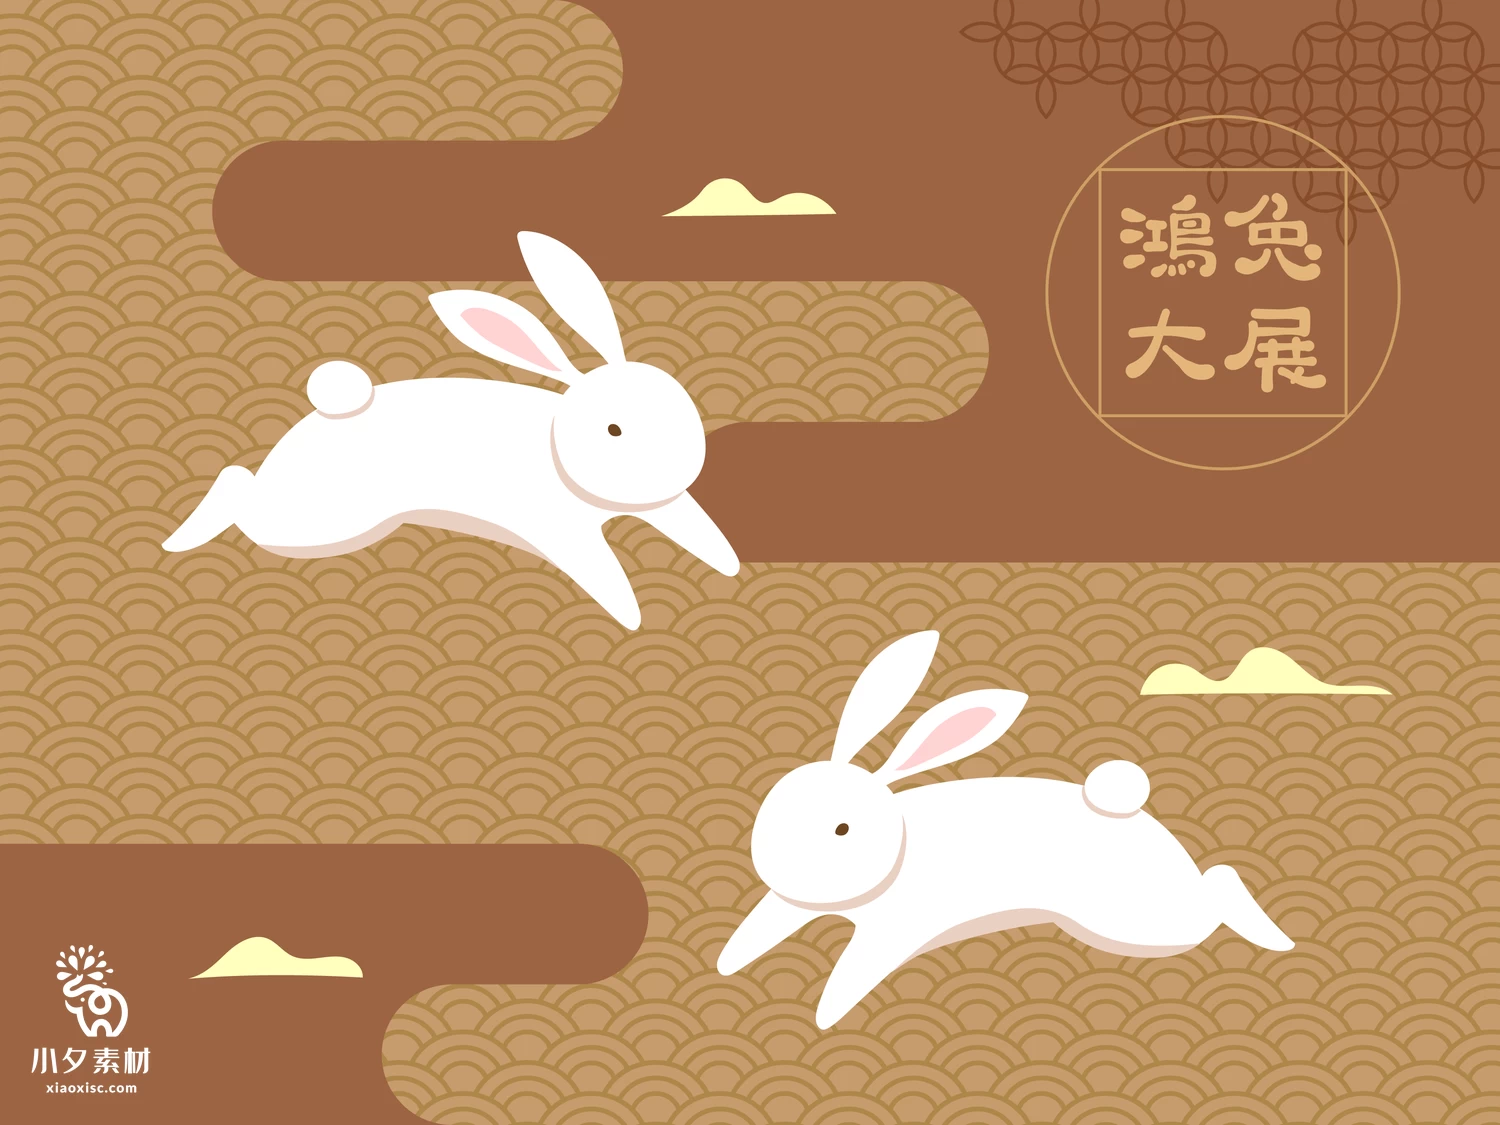 2023年兔年大吉恭贺新春新年快乐兔年吉祥如意插画海报AI矢量素材【004】